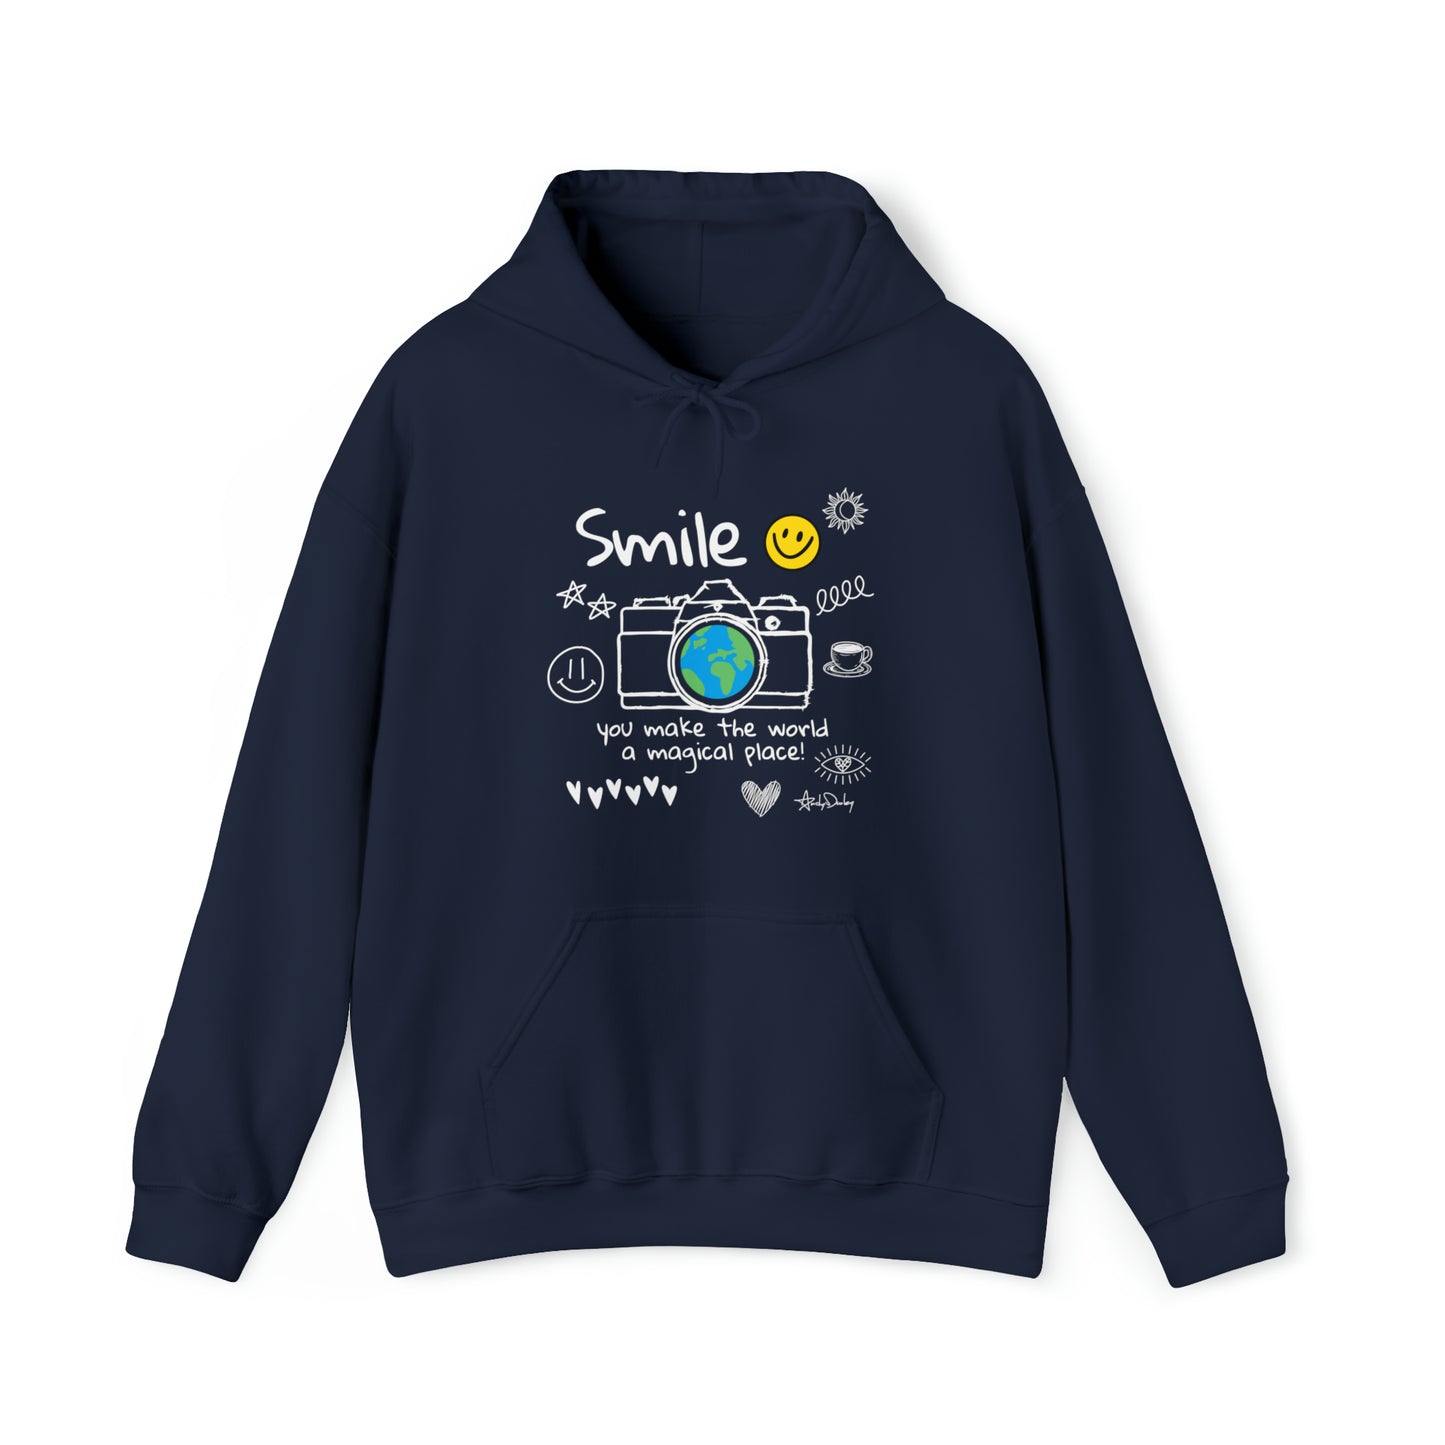 Smile - Hooded Sweatshirt